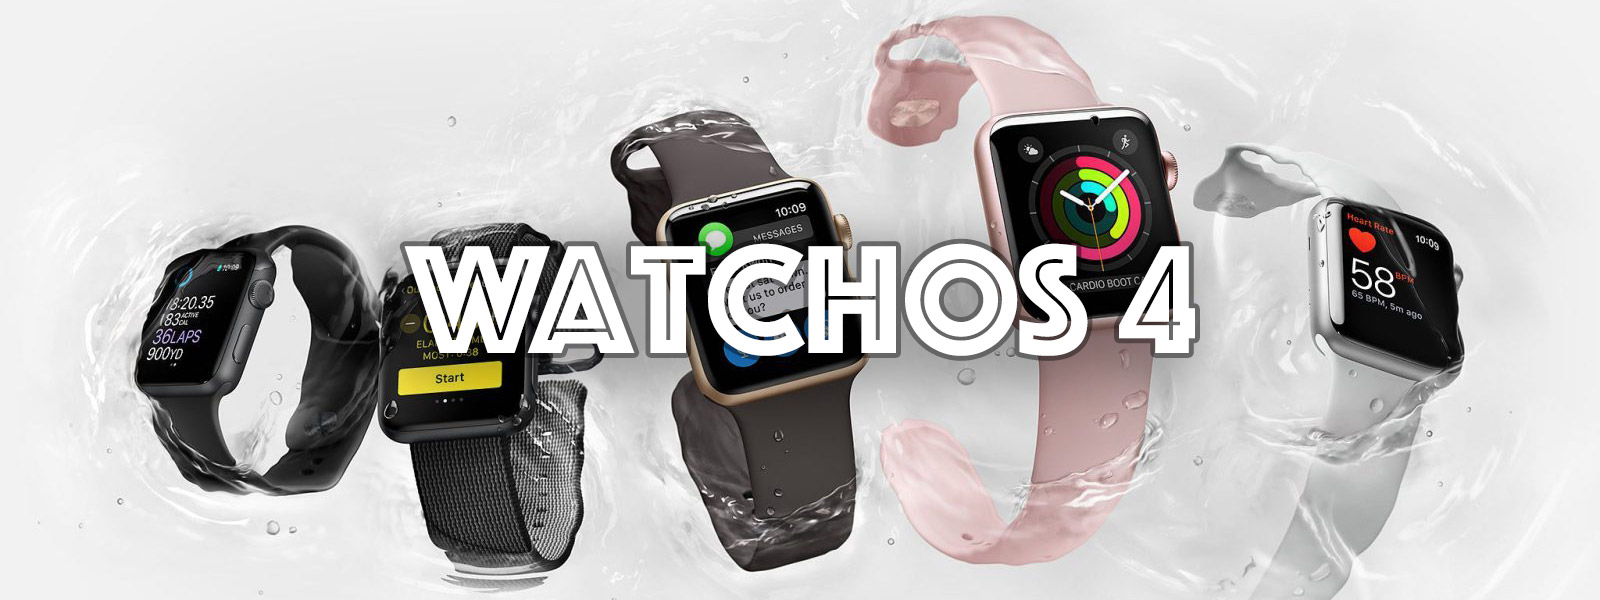 watchOS 4 ra mắt với mặt đồng hồ Siri thông minh, sẽ được thử nghiệm trong vài giờ nữa